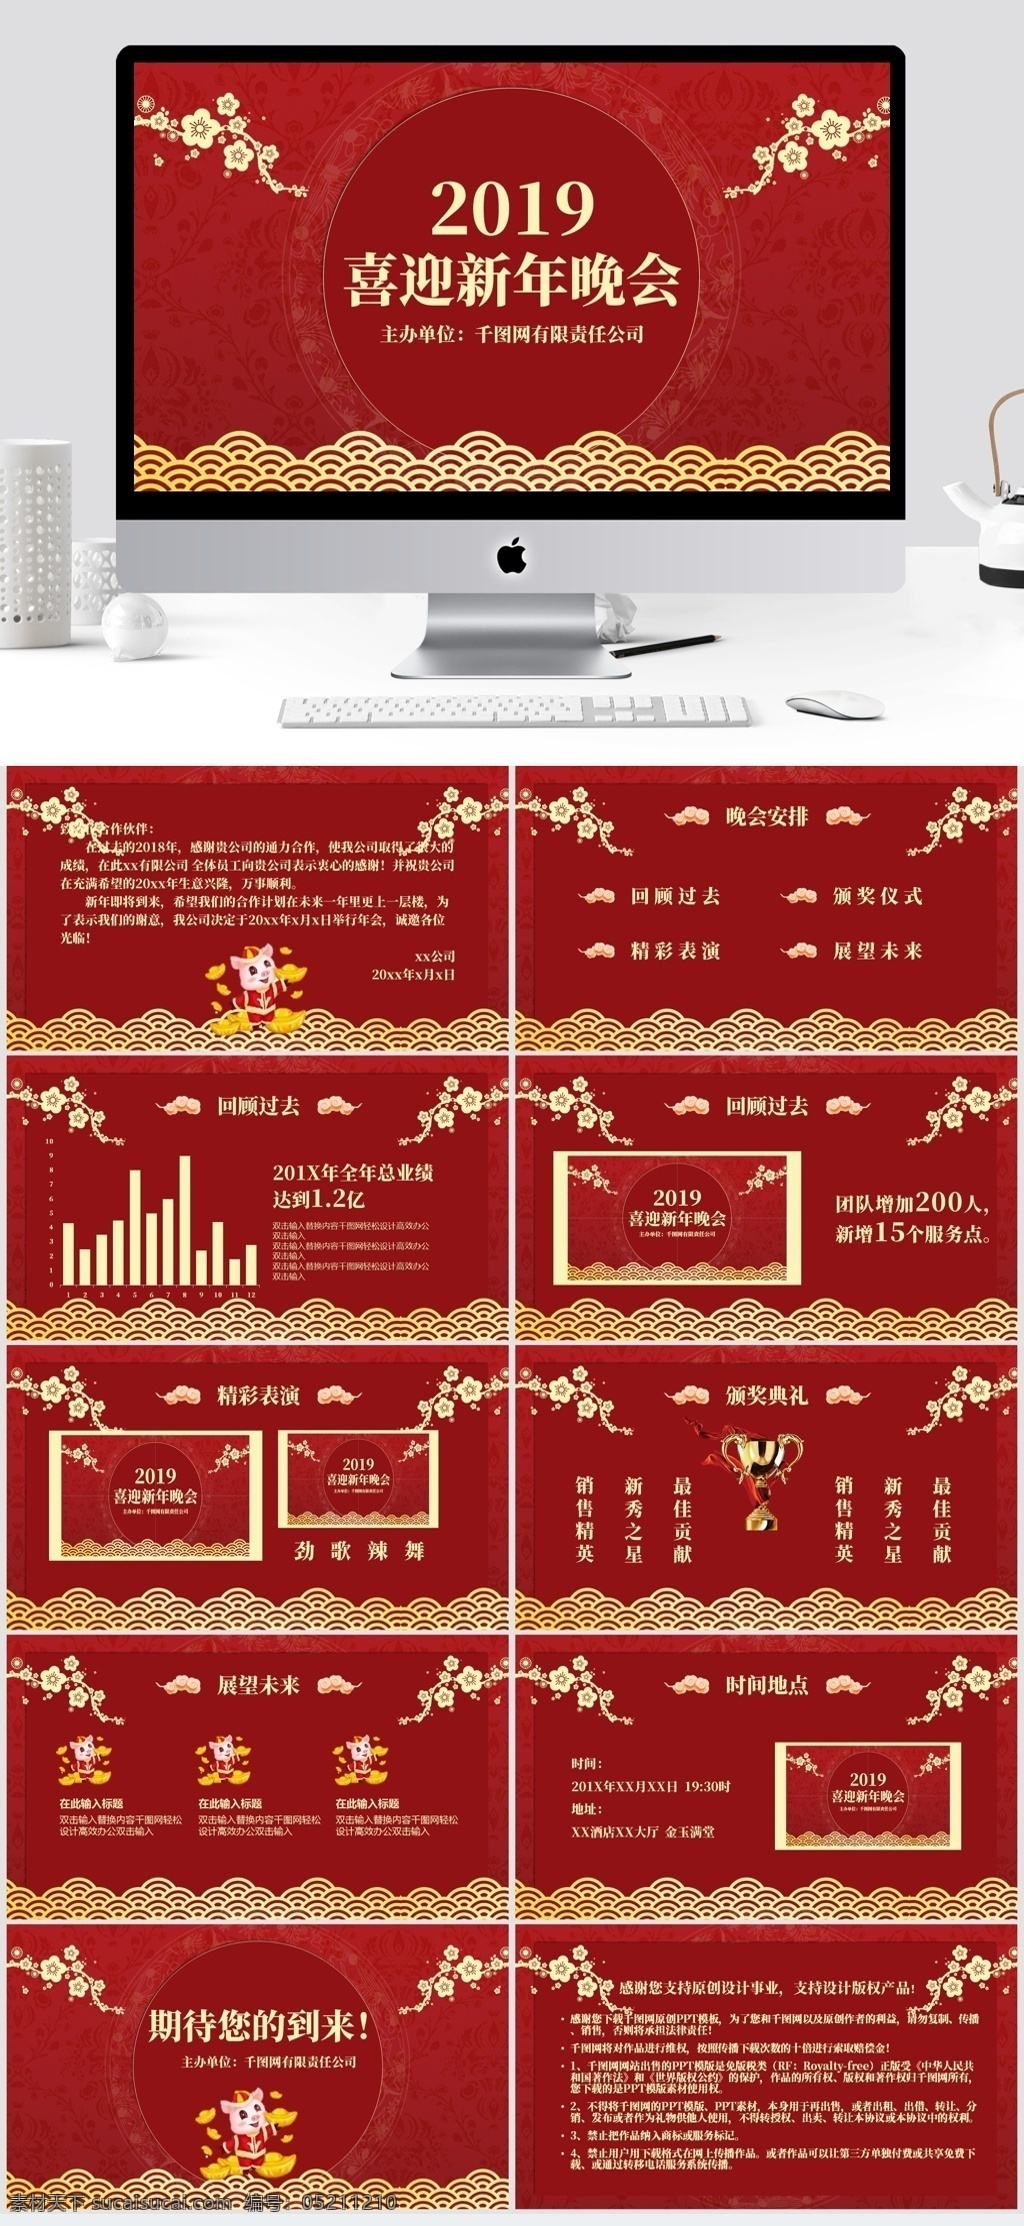 中国 风 剪纸 系列 喜迎 新年 邀请函 中国风 红色剪纸 金色梅花 新年晚会 年会邀请函 红金系列